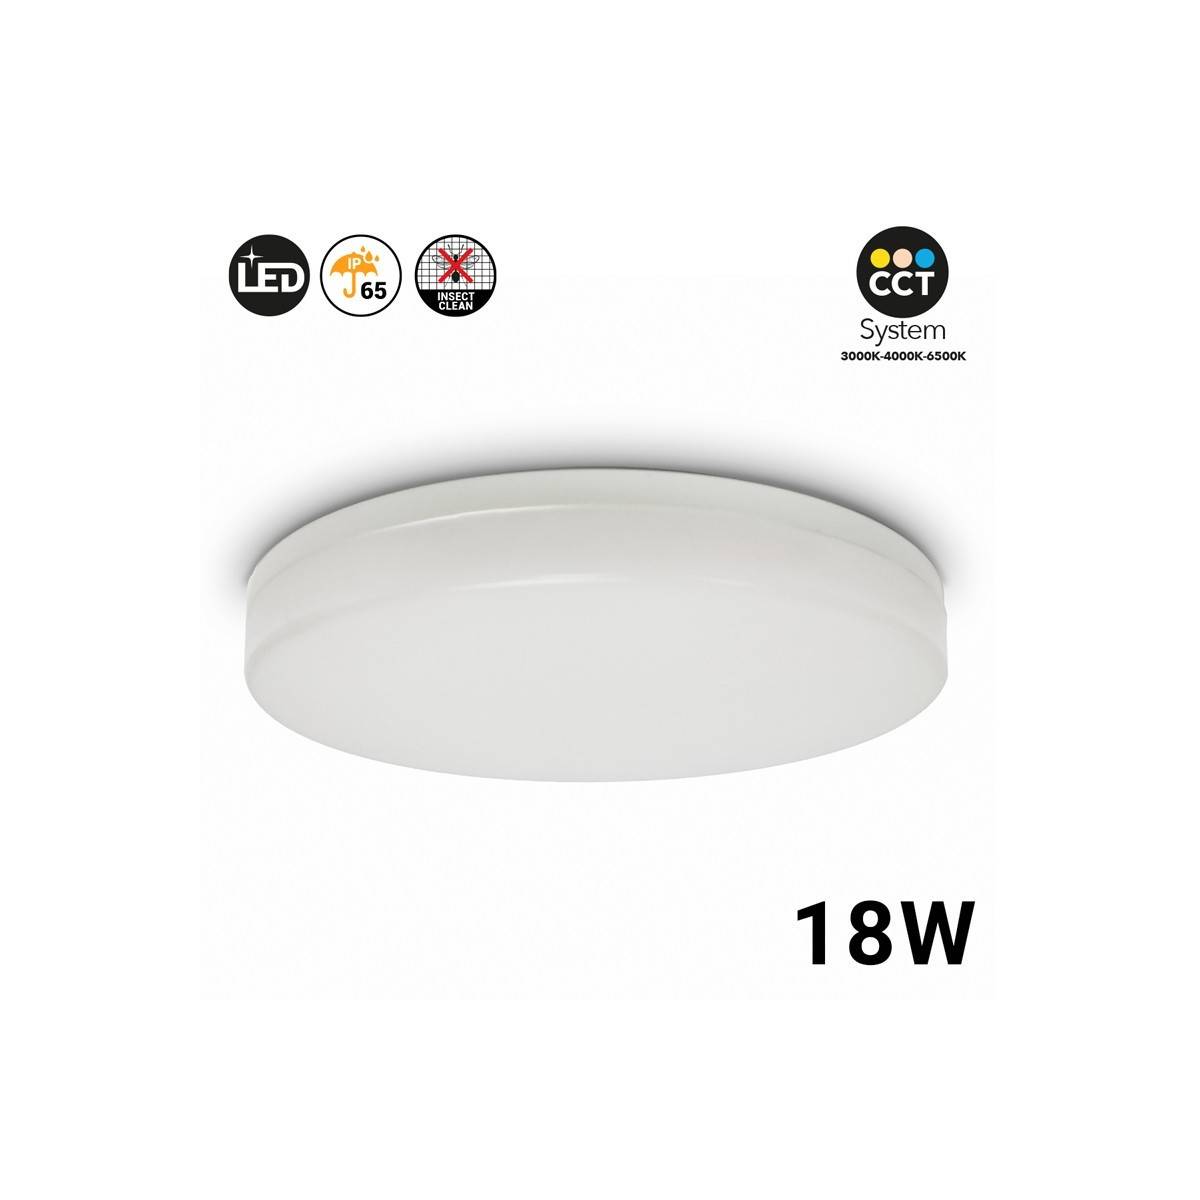 Plafón LED de superficie circular 18W